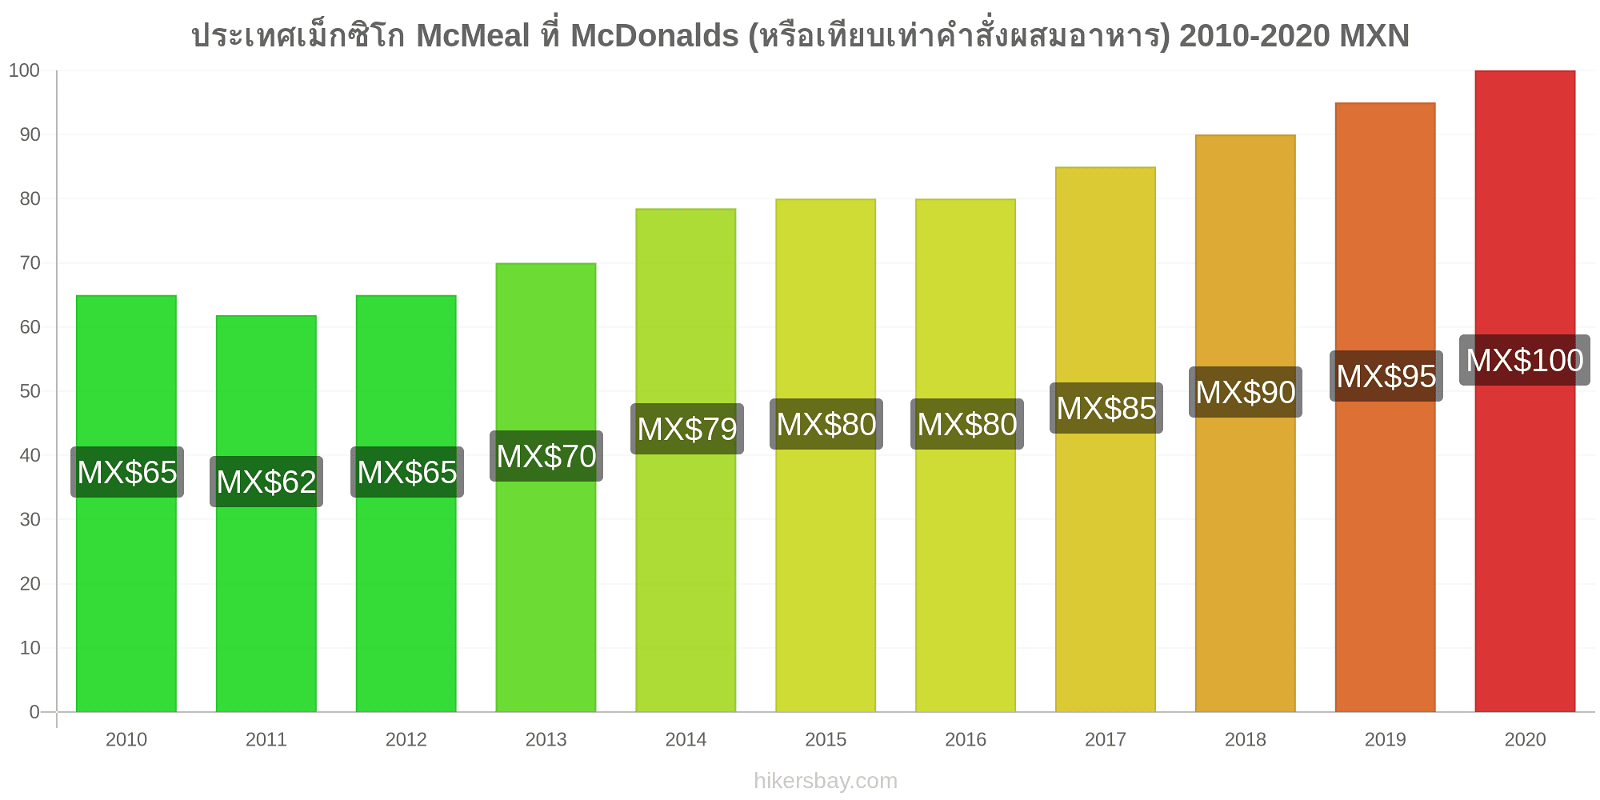 ประเทศเม็กซิโก การเปลี่ยนแปลงราคา McMeal ที่ McDonalds (หรือเทียบเท่าคำสั่งผสมอาหาร) hikersbay.com